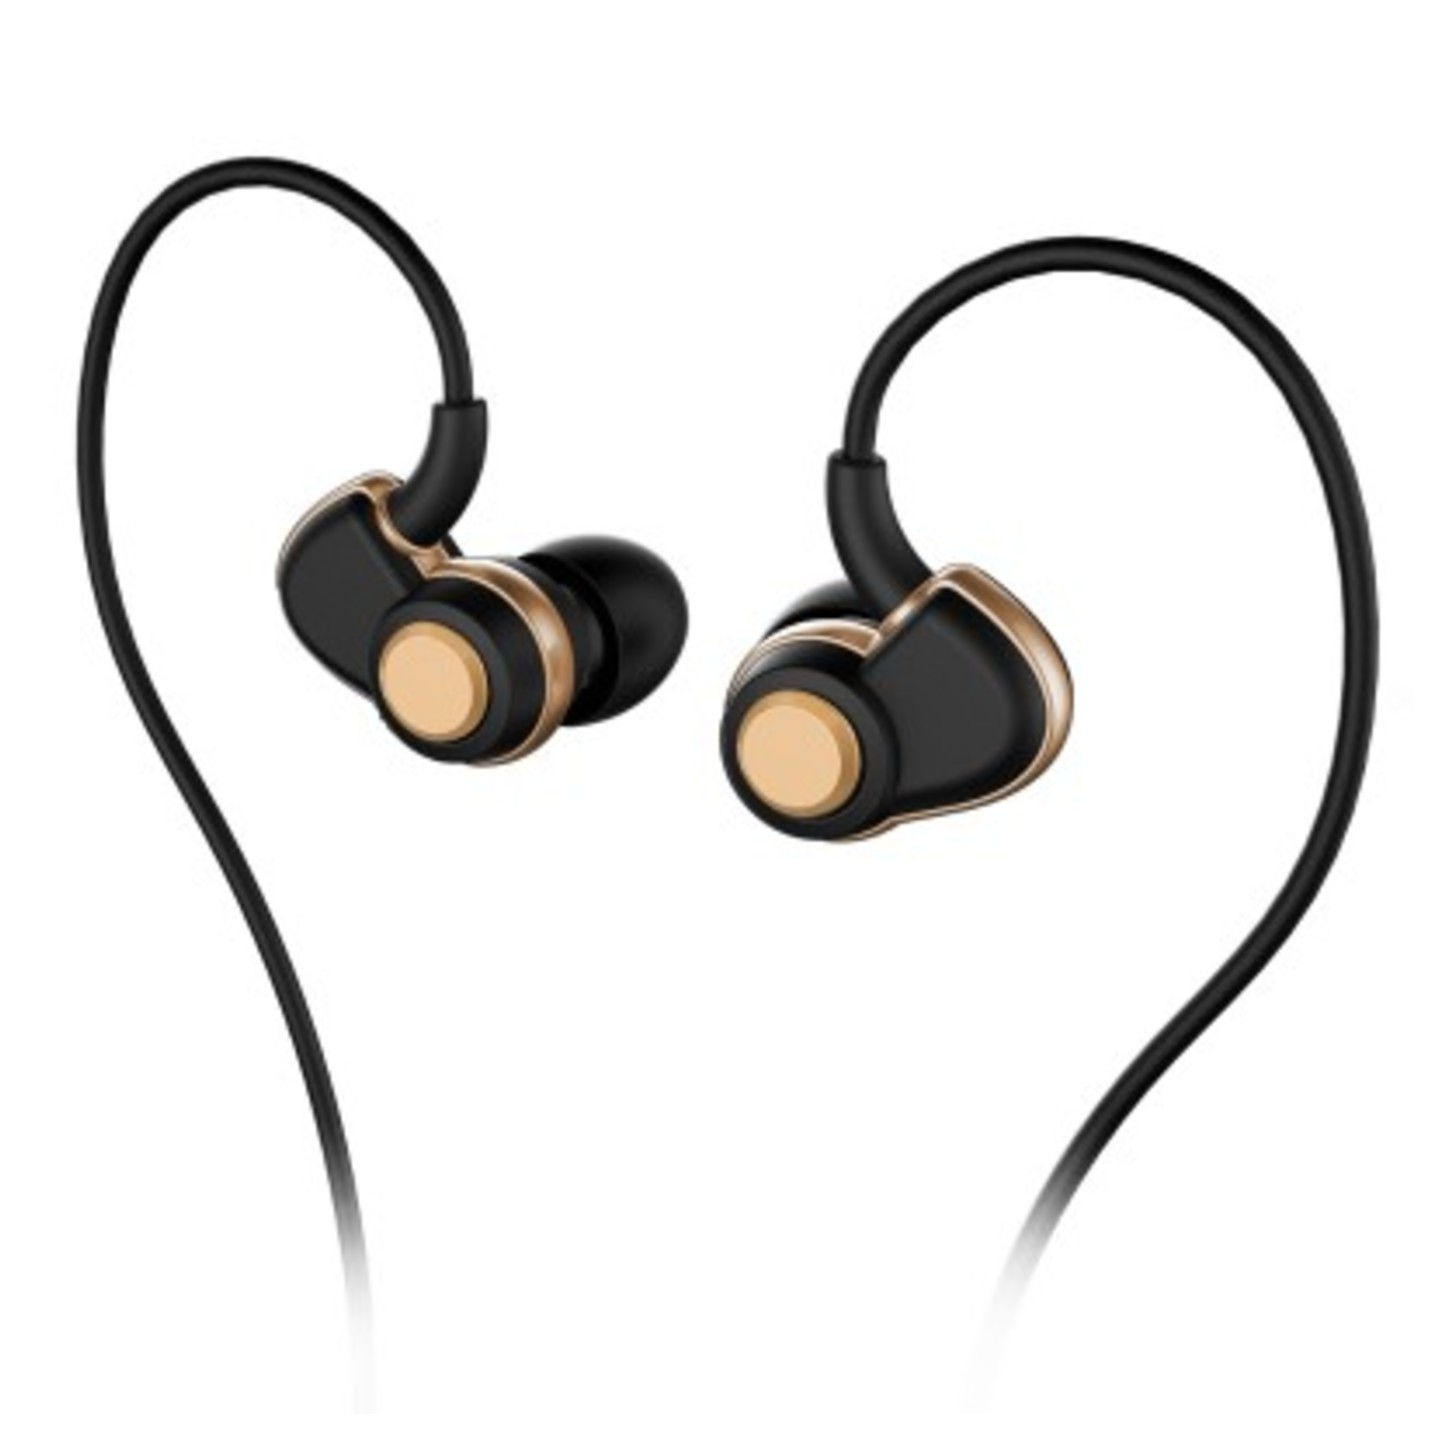 SoundMAGIC PL30+ In-Ear Earphones